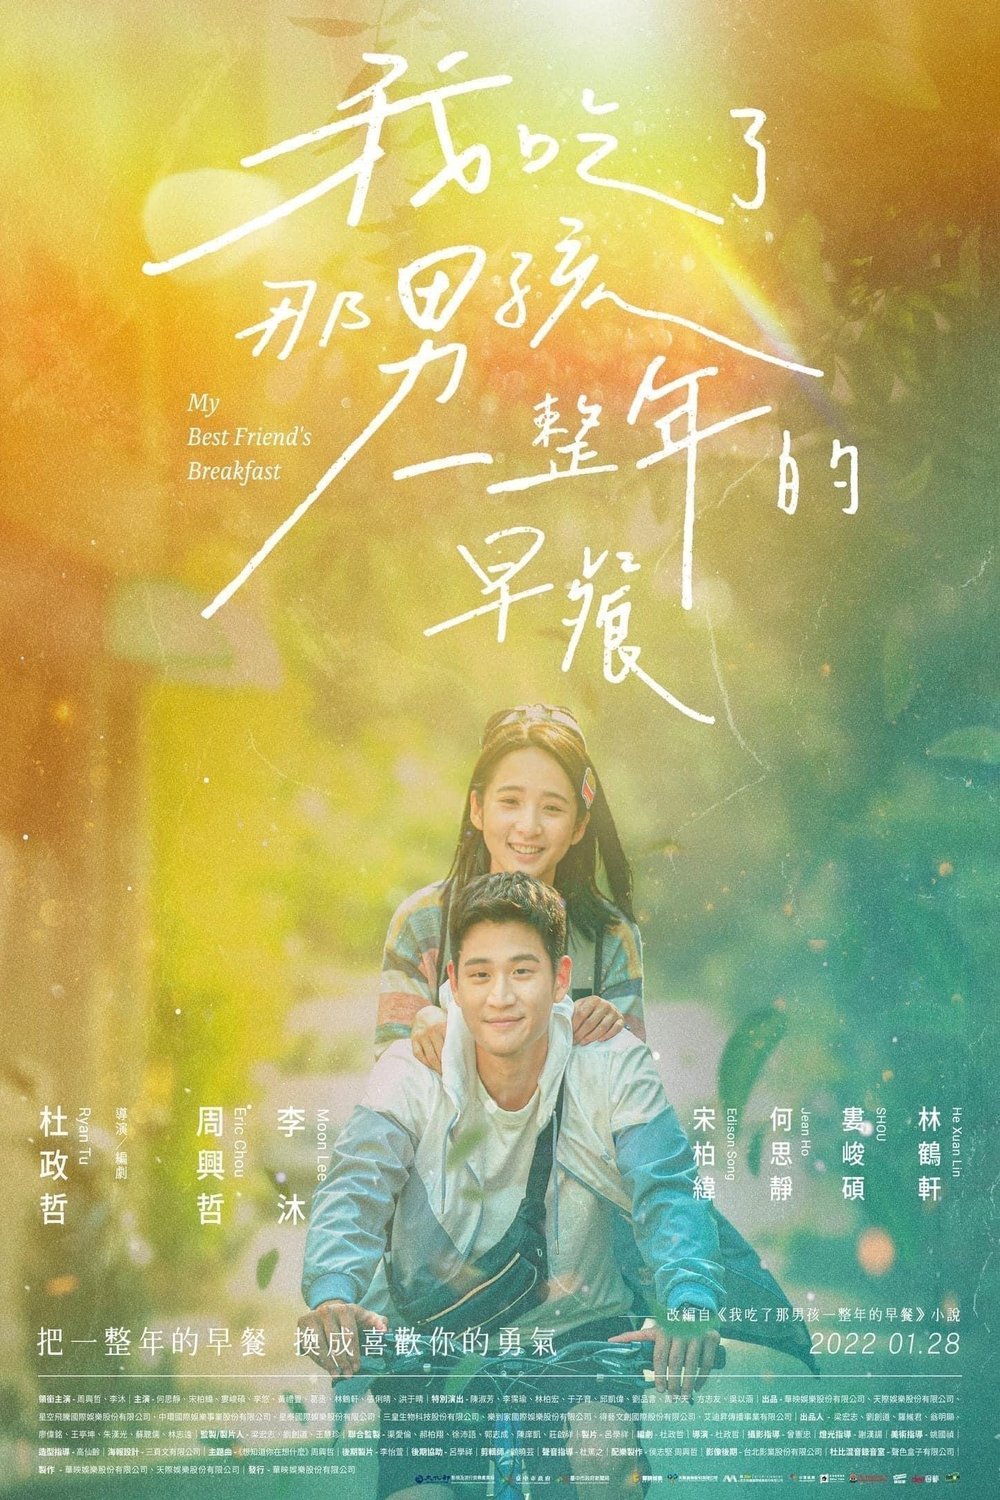 L'affiche originale du film Wo chi le na nan hai yi zheng nian de zao can en mandarin